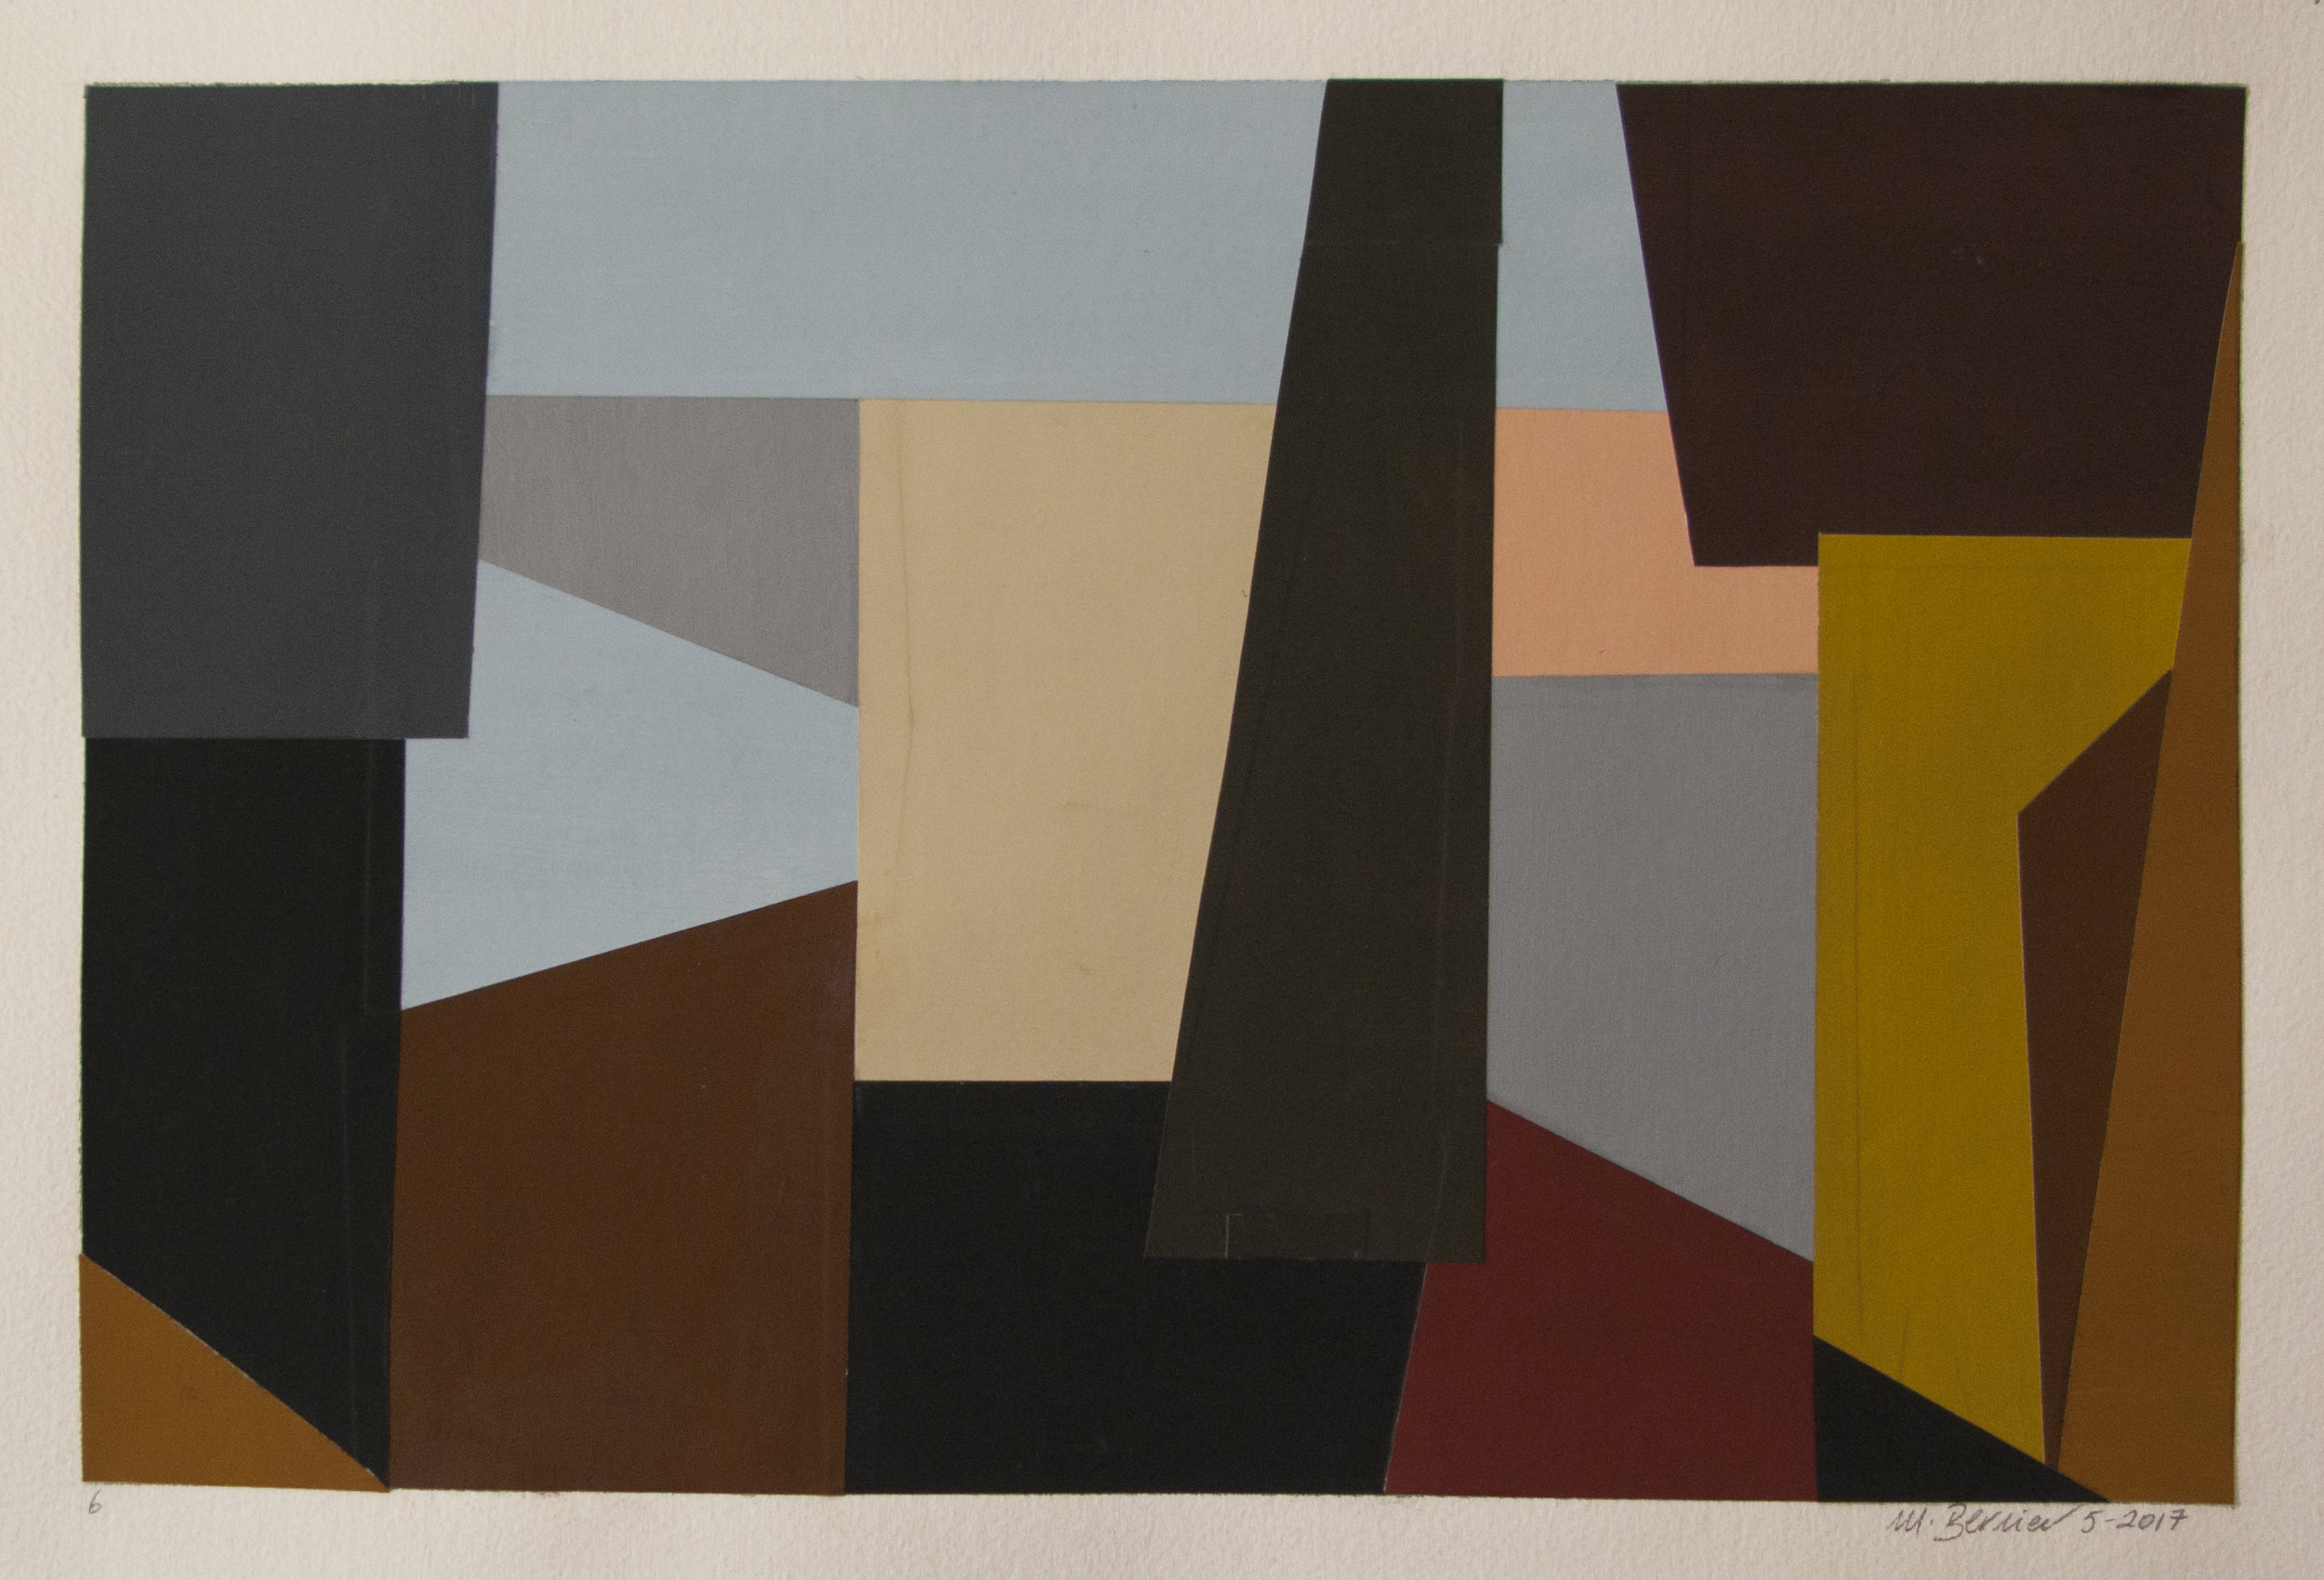    Cutout 6,   gouache/cut paper, 14 × 20 in, 35.6 × 50.8 cm, 2017 